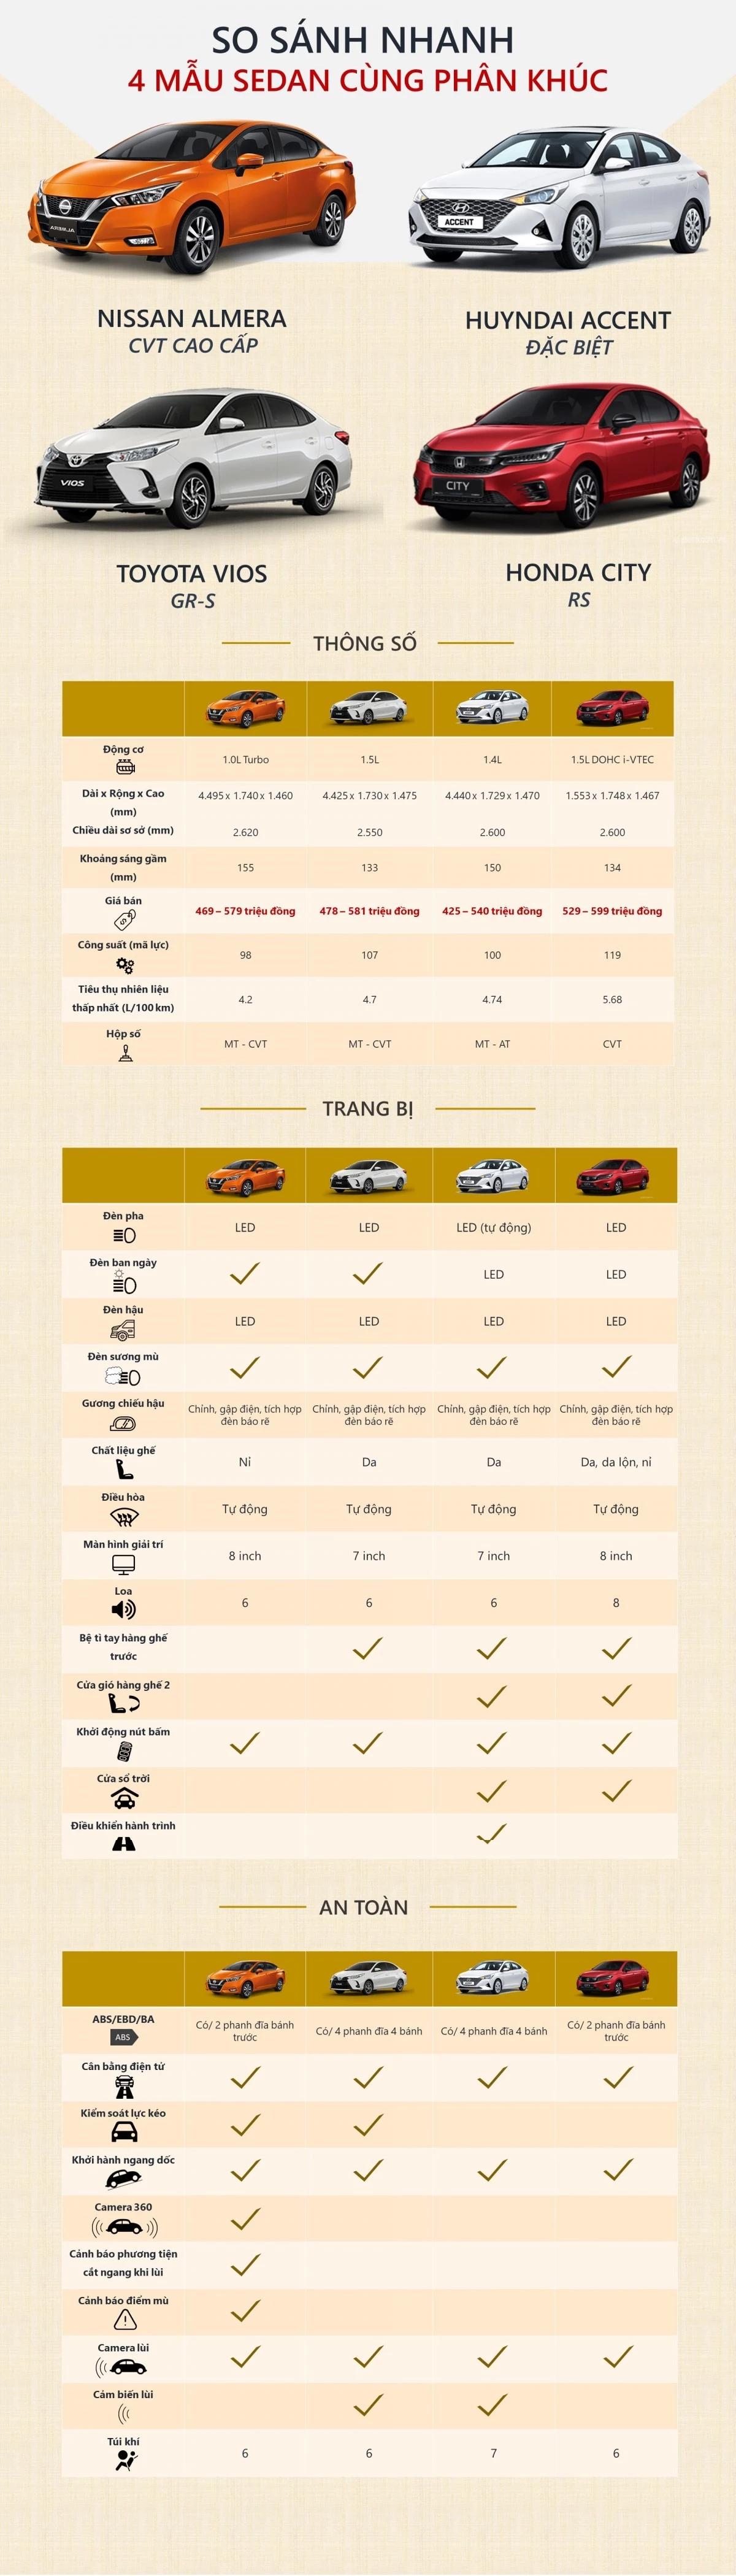 Bài viết so sánh các phiên bản cao nhất của mỗi mẫu xe. (Đồ họa: HN)